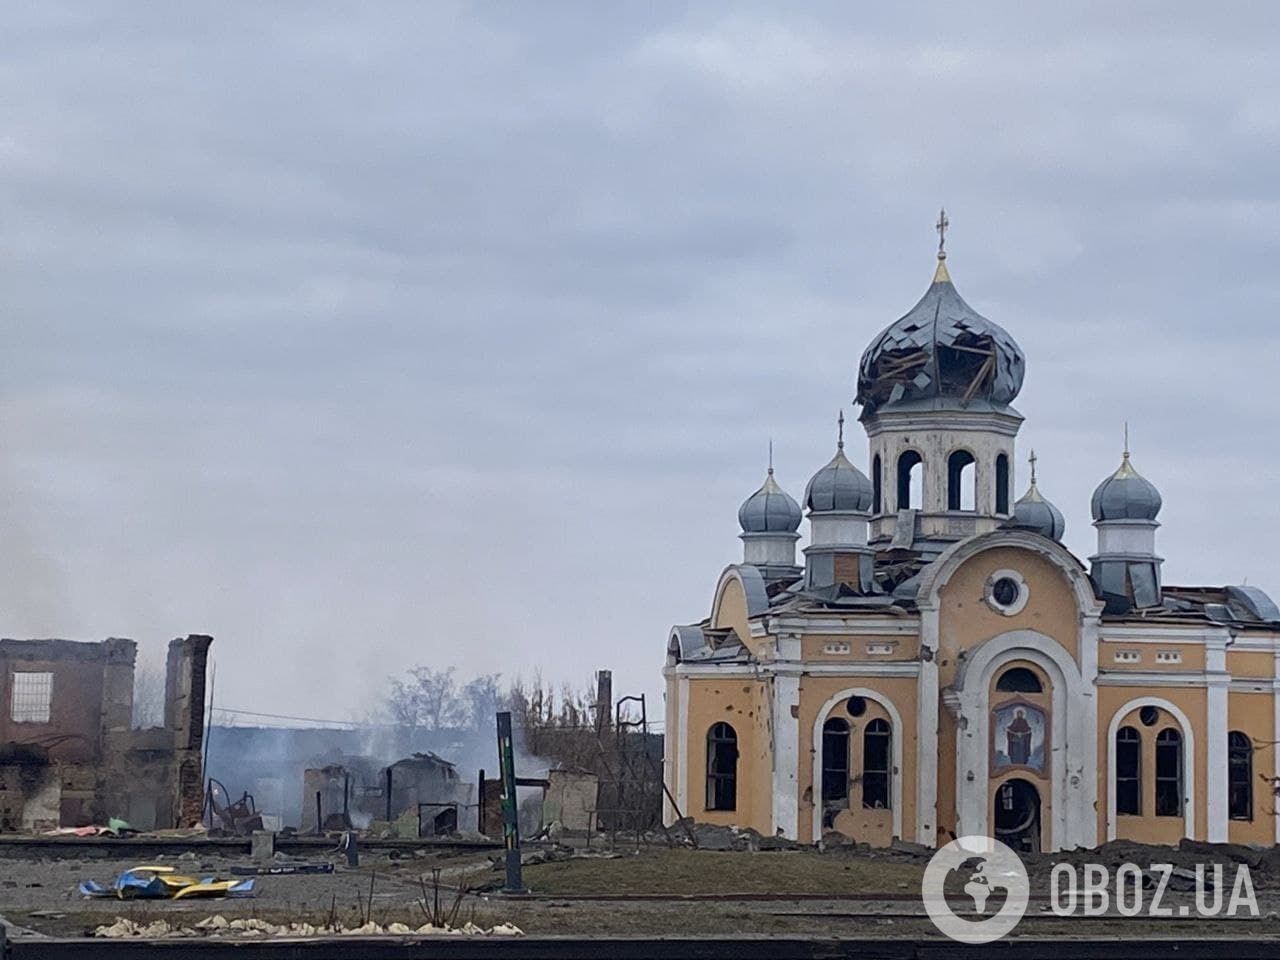 "Прийшов "русскій мір": на Житомирщині показали зруйновані окупантами церкву та центр міста